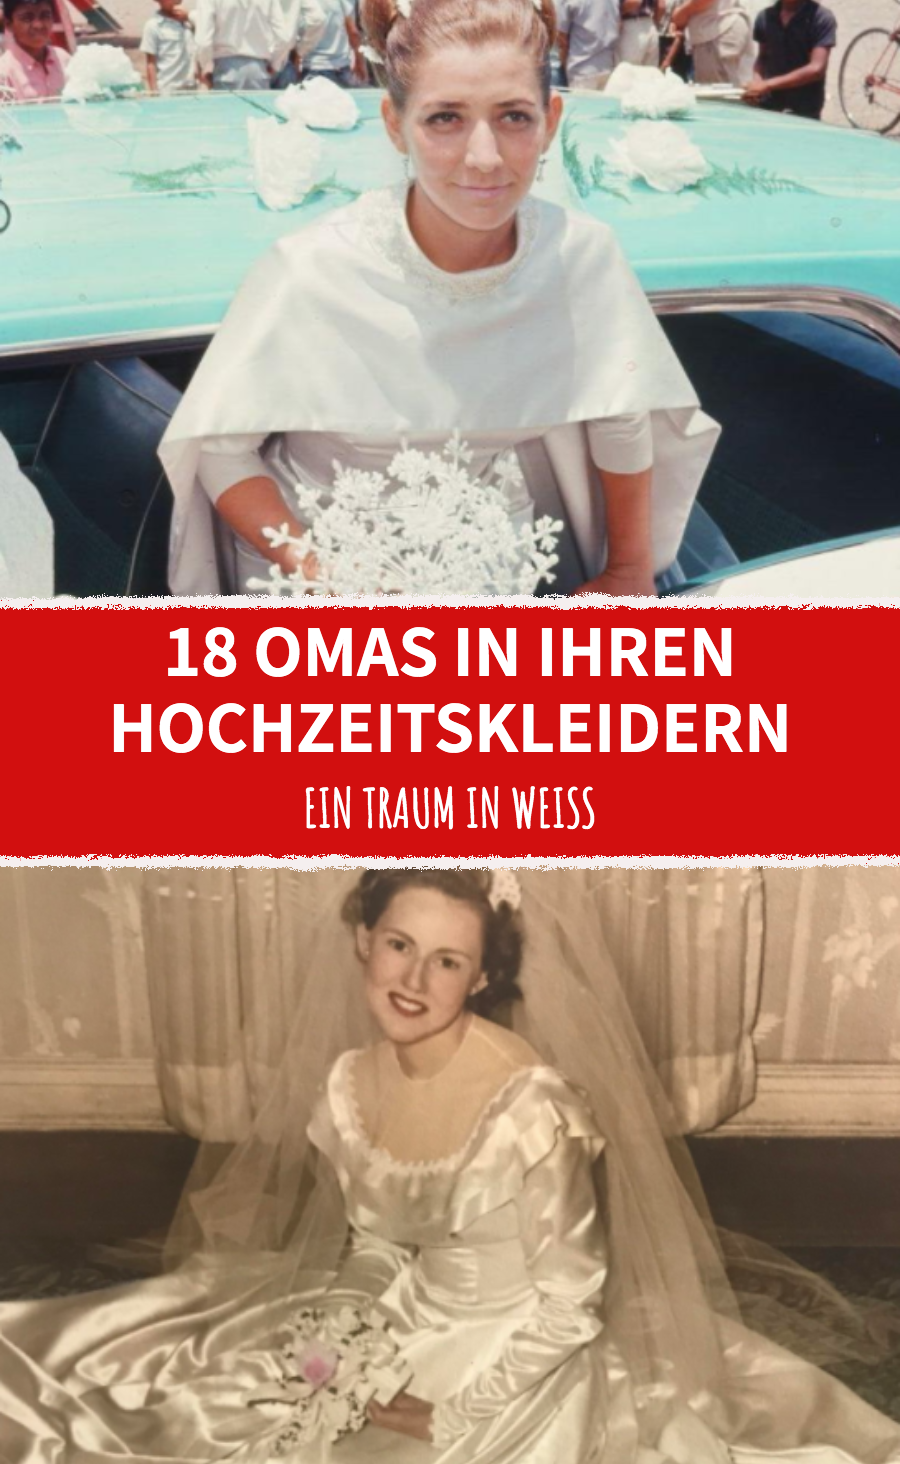 Vergangenheit wird lebendig: Omas zeigen Hochzeitsfotos